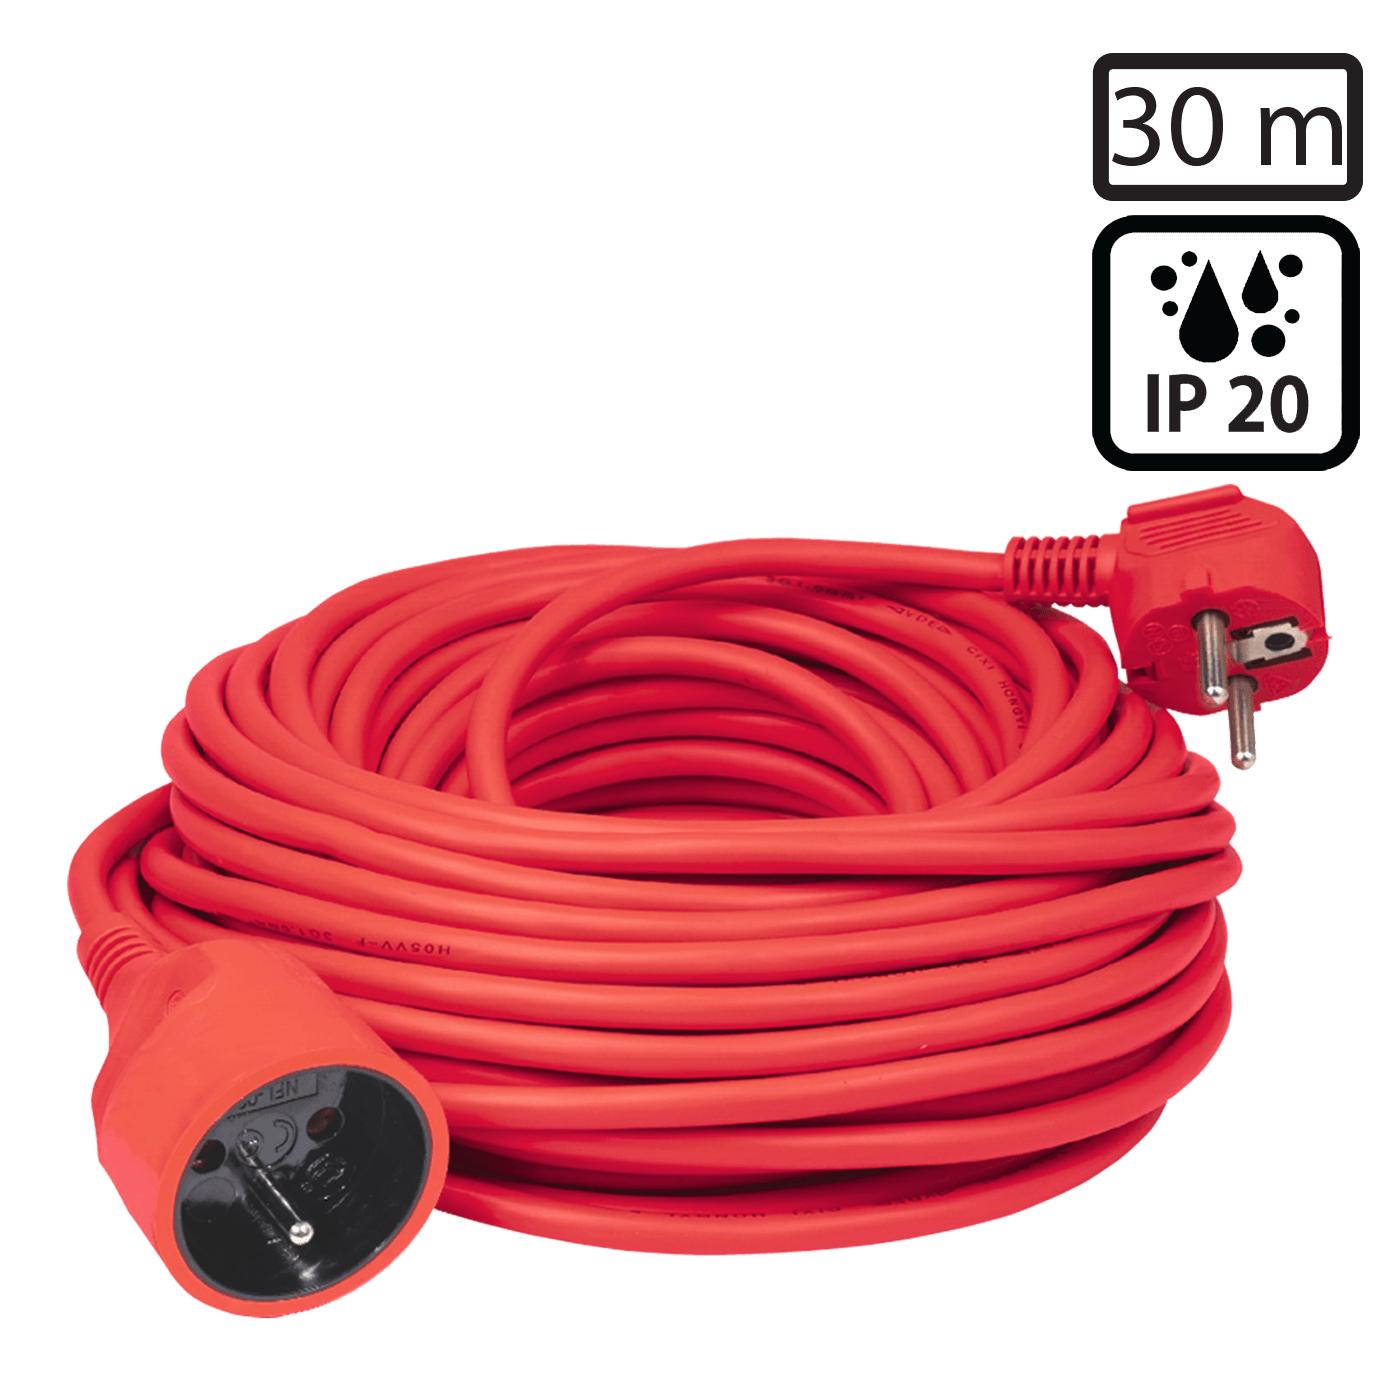 Produžni strujni kabl 1 utičnica, 30 m, H05VV-F 3G, crvena